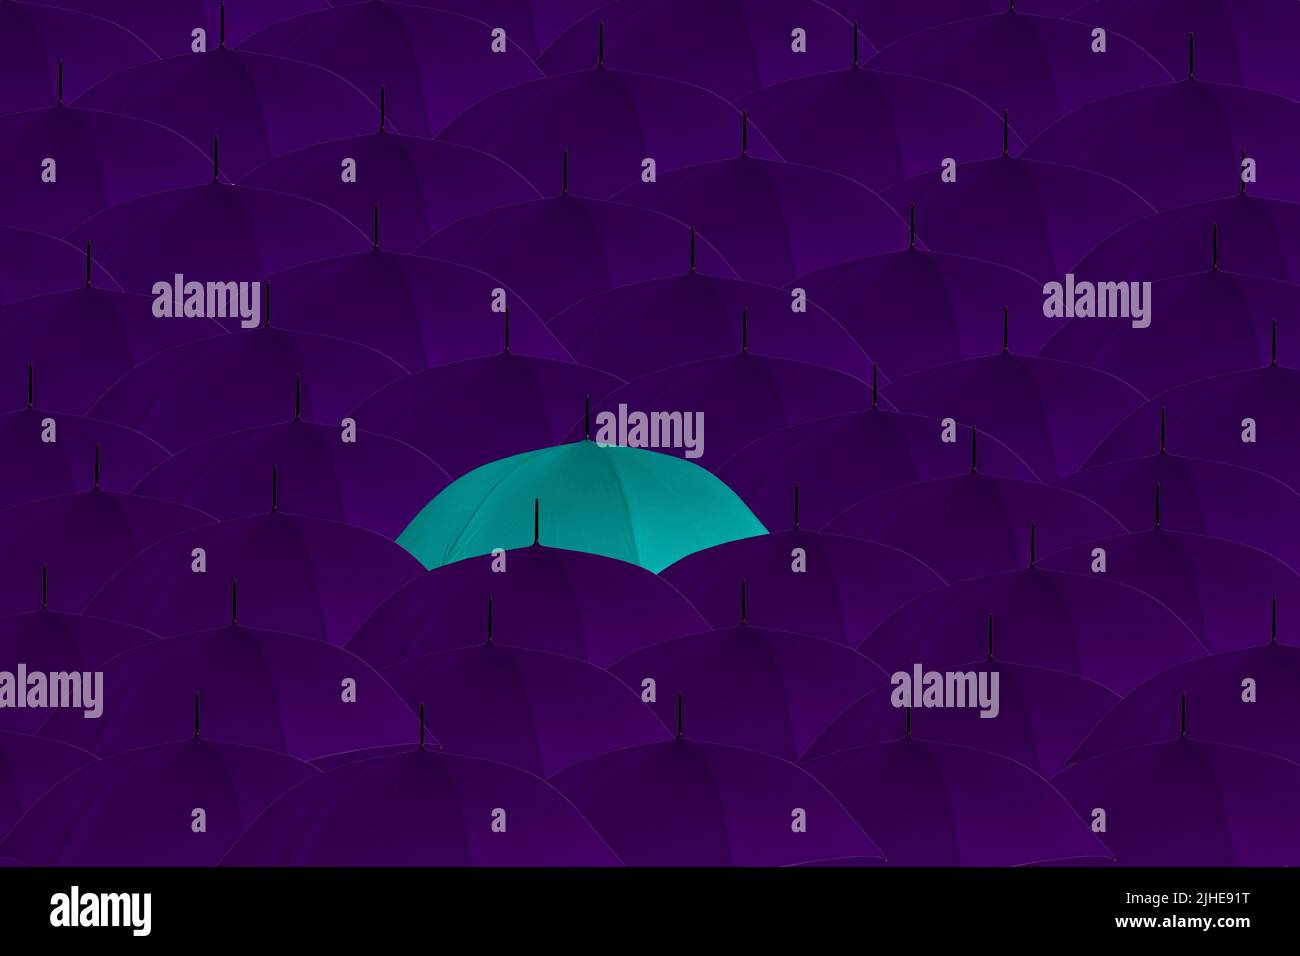 Heben Sie sich von der Masse ab ungerade One Out Konzept Menge von lila Regenschirmen ein blauer Regenschirm, der hervorsticht Stockfoto